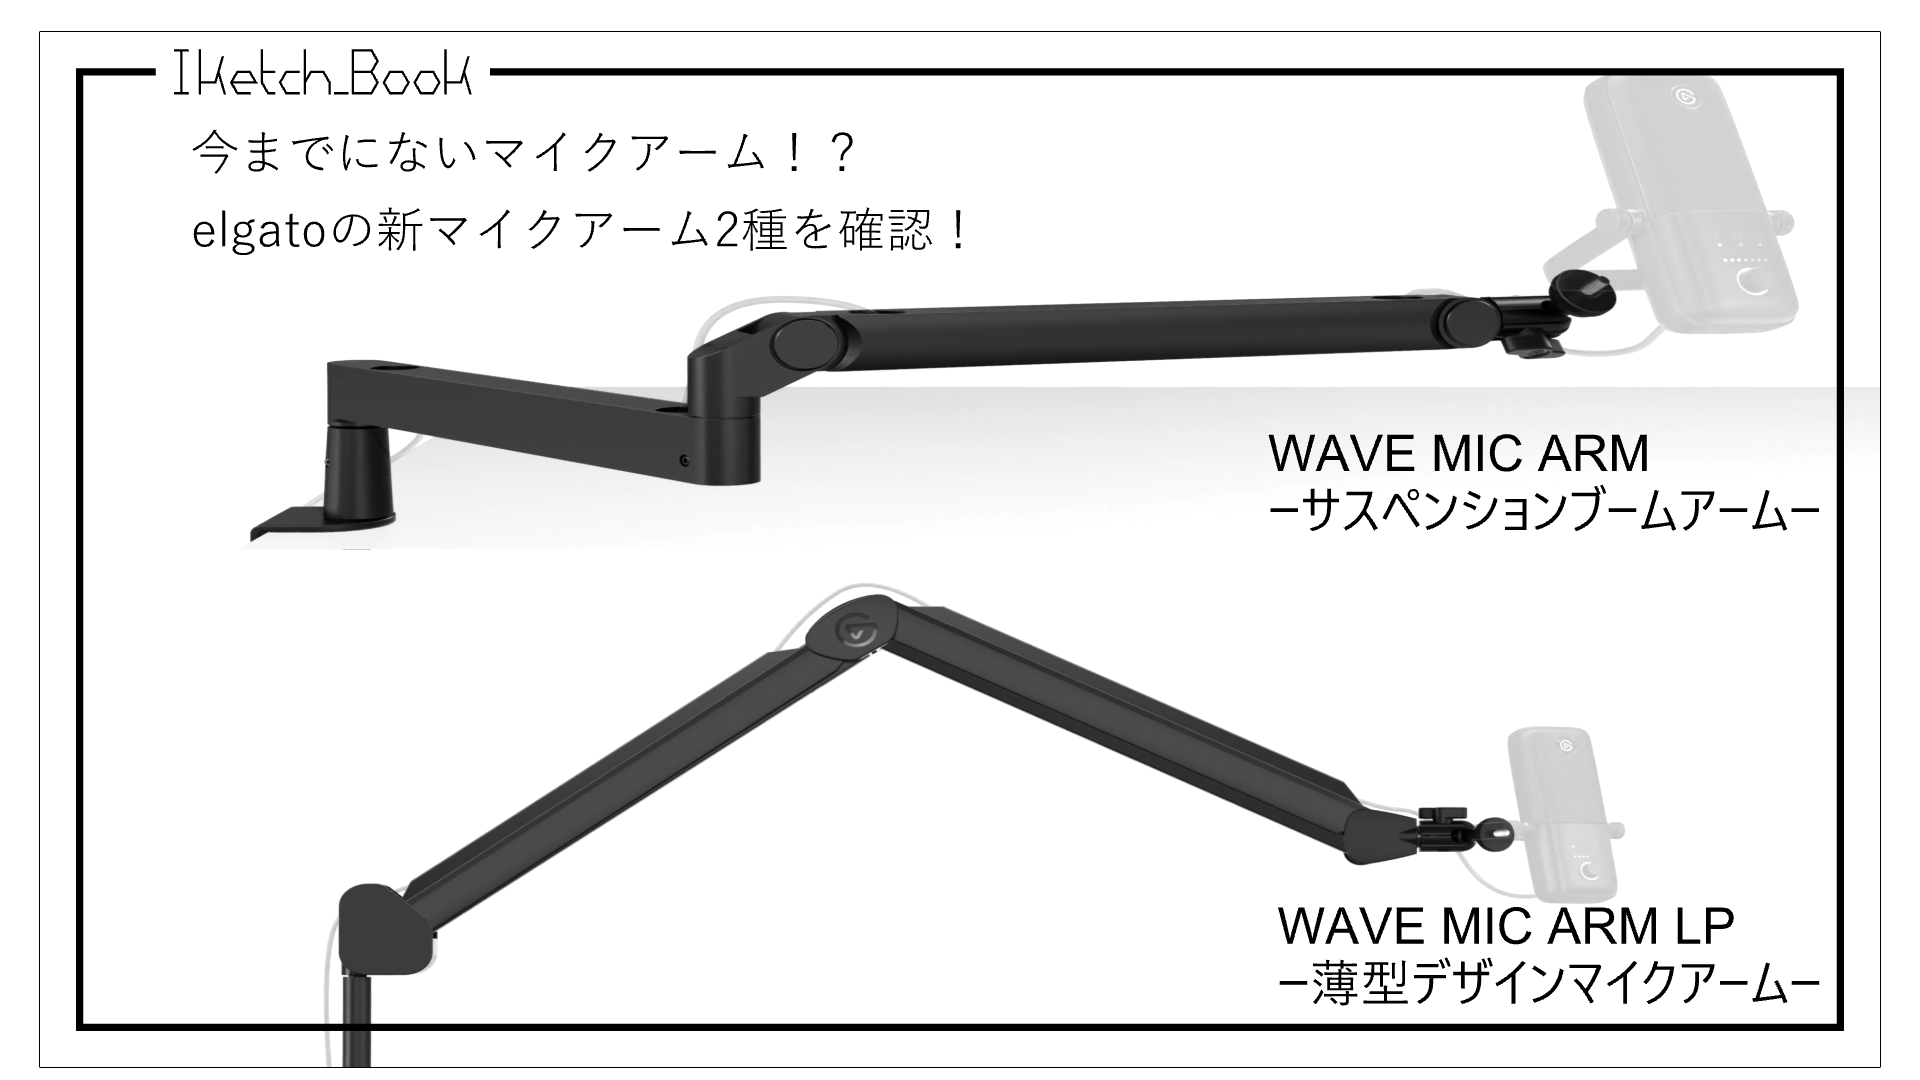 全国一律送料無料 Elgato Wave Mic Arm LP 薄型デザインマイクアーム